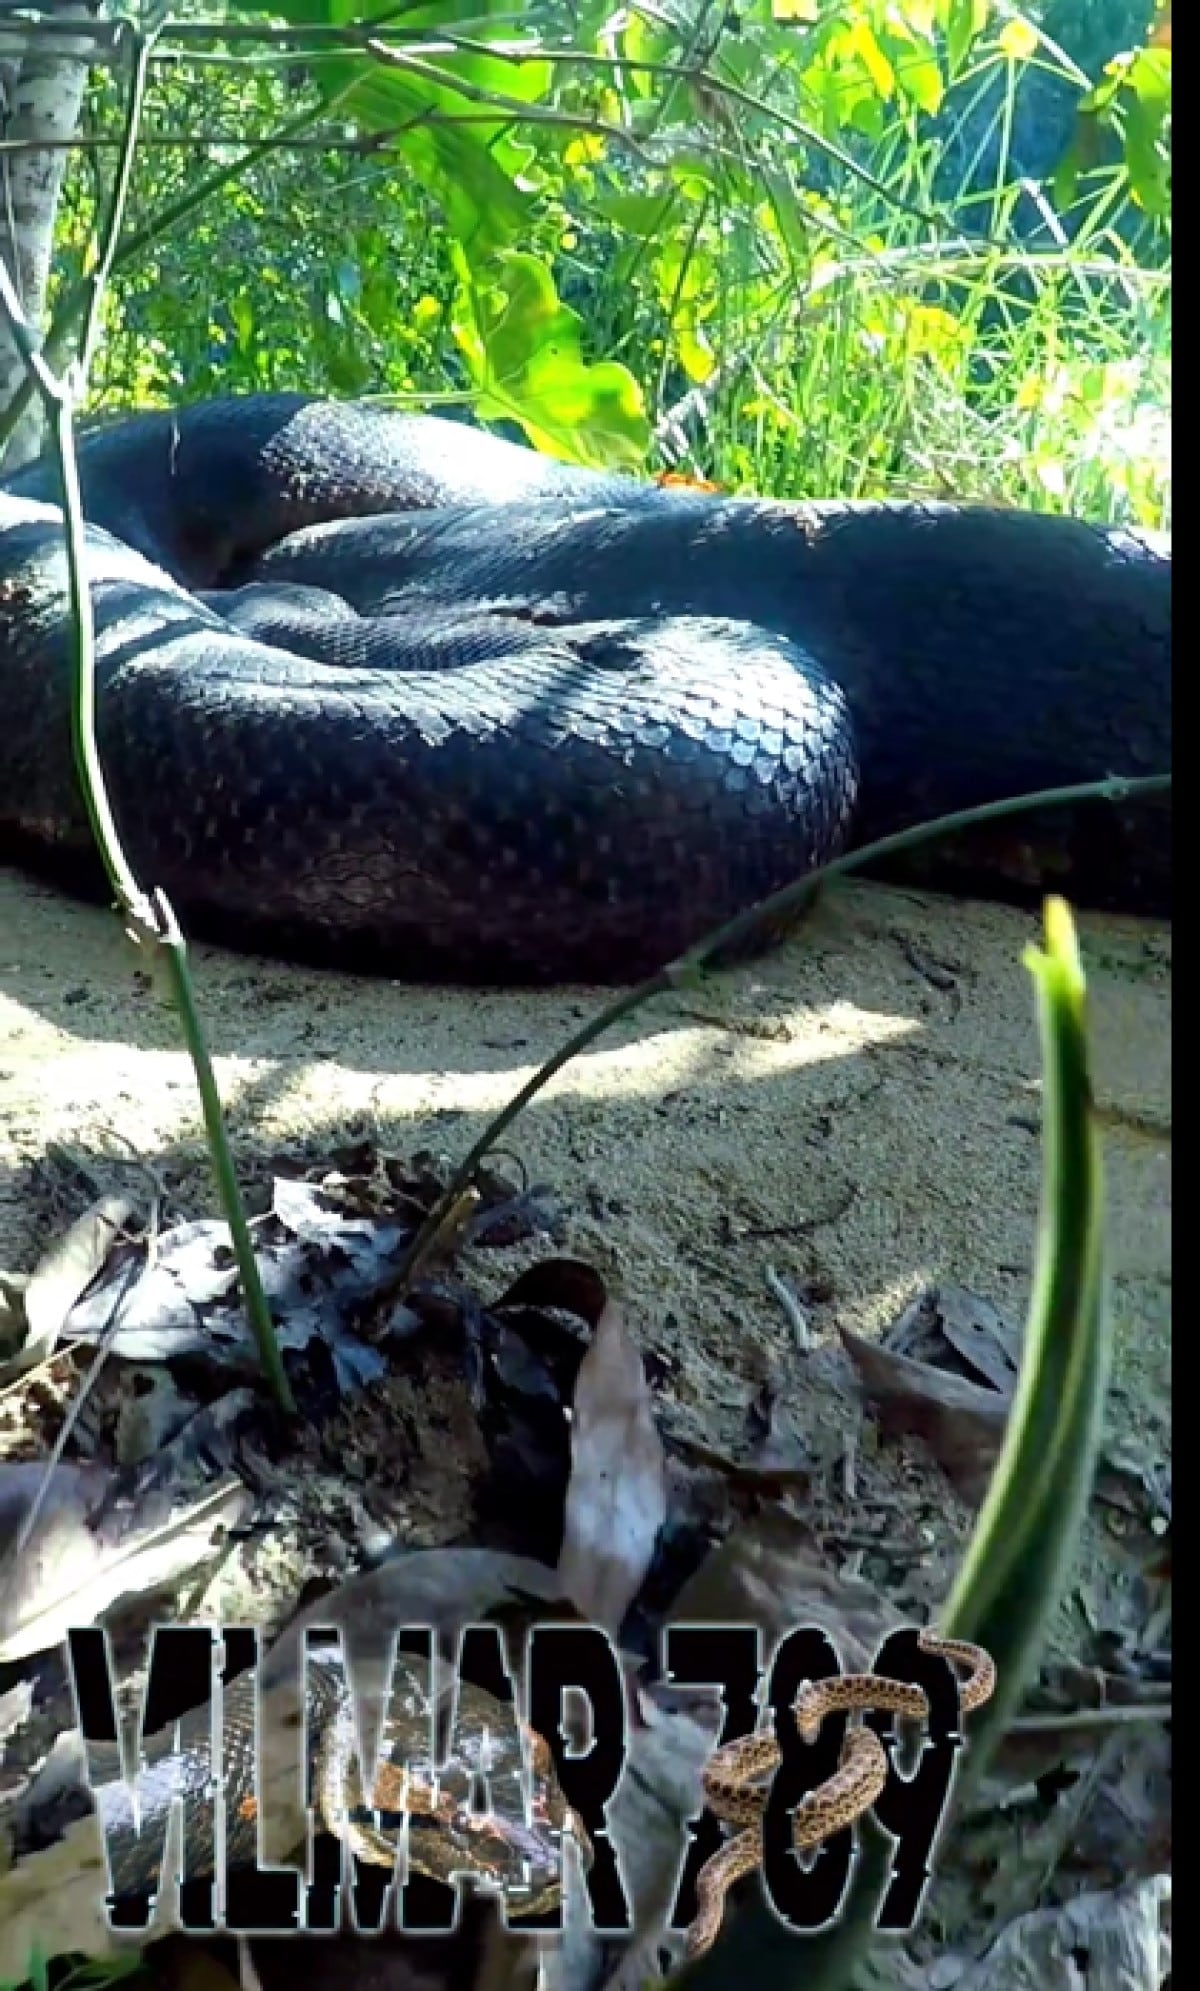 Mais uma vez o guia turístico Vilmar Teixeira dá um show de imagens ao filmar duas cobras sucuris fêmeas ocupando o mesmo espaço.